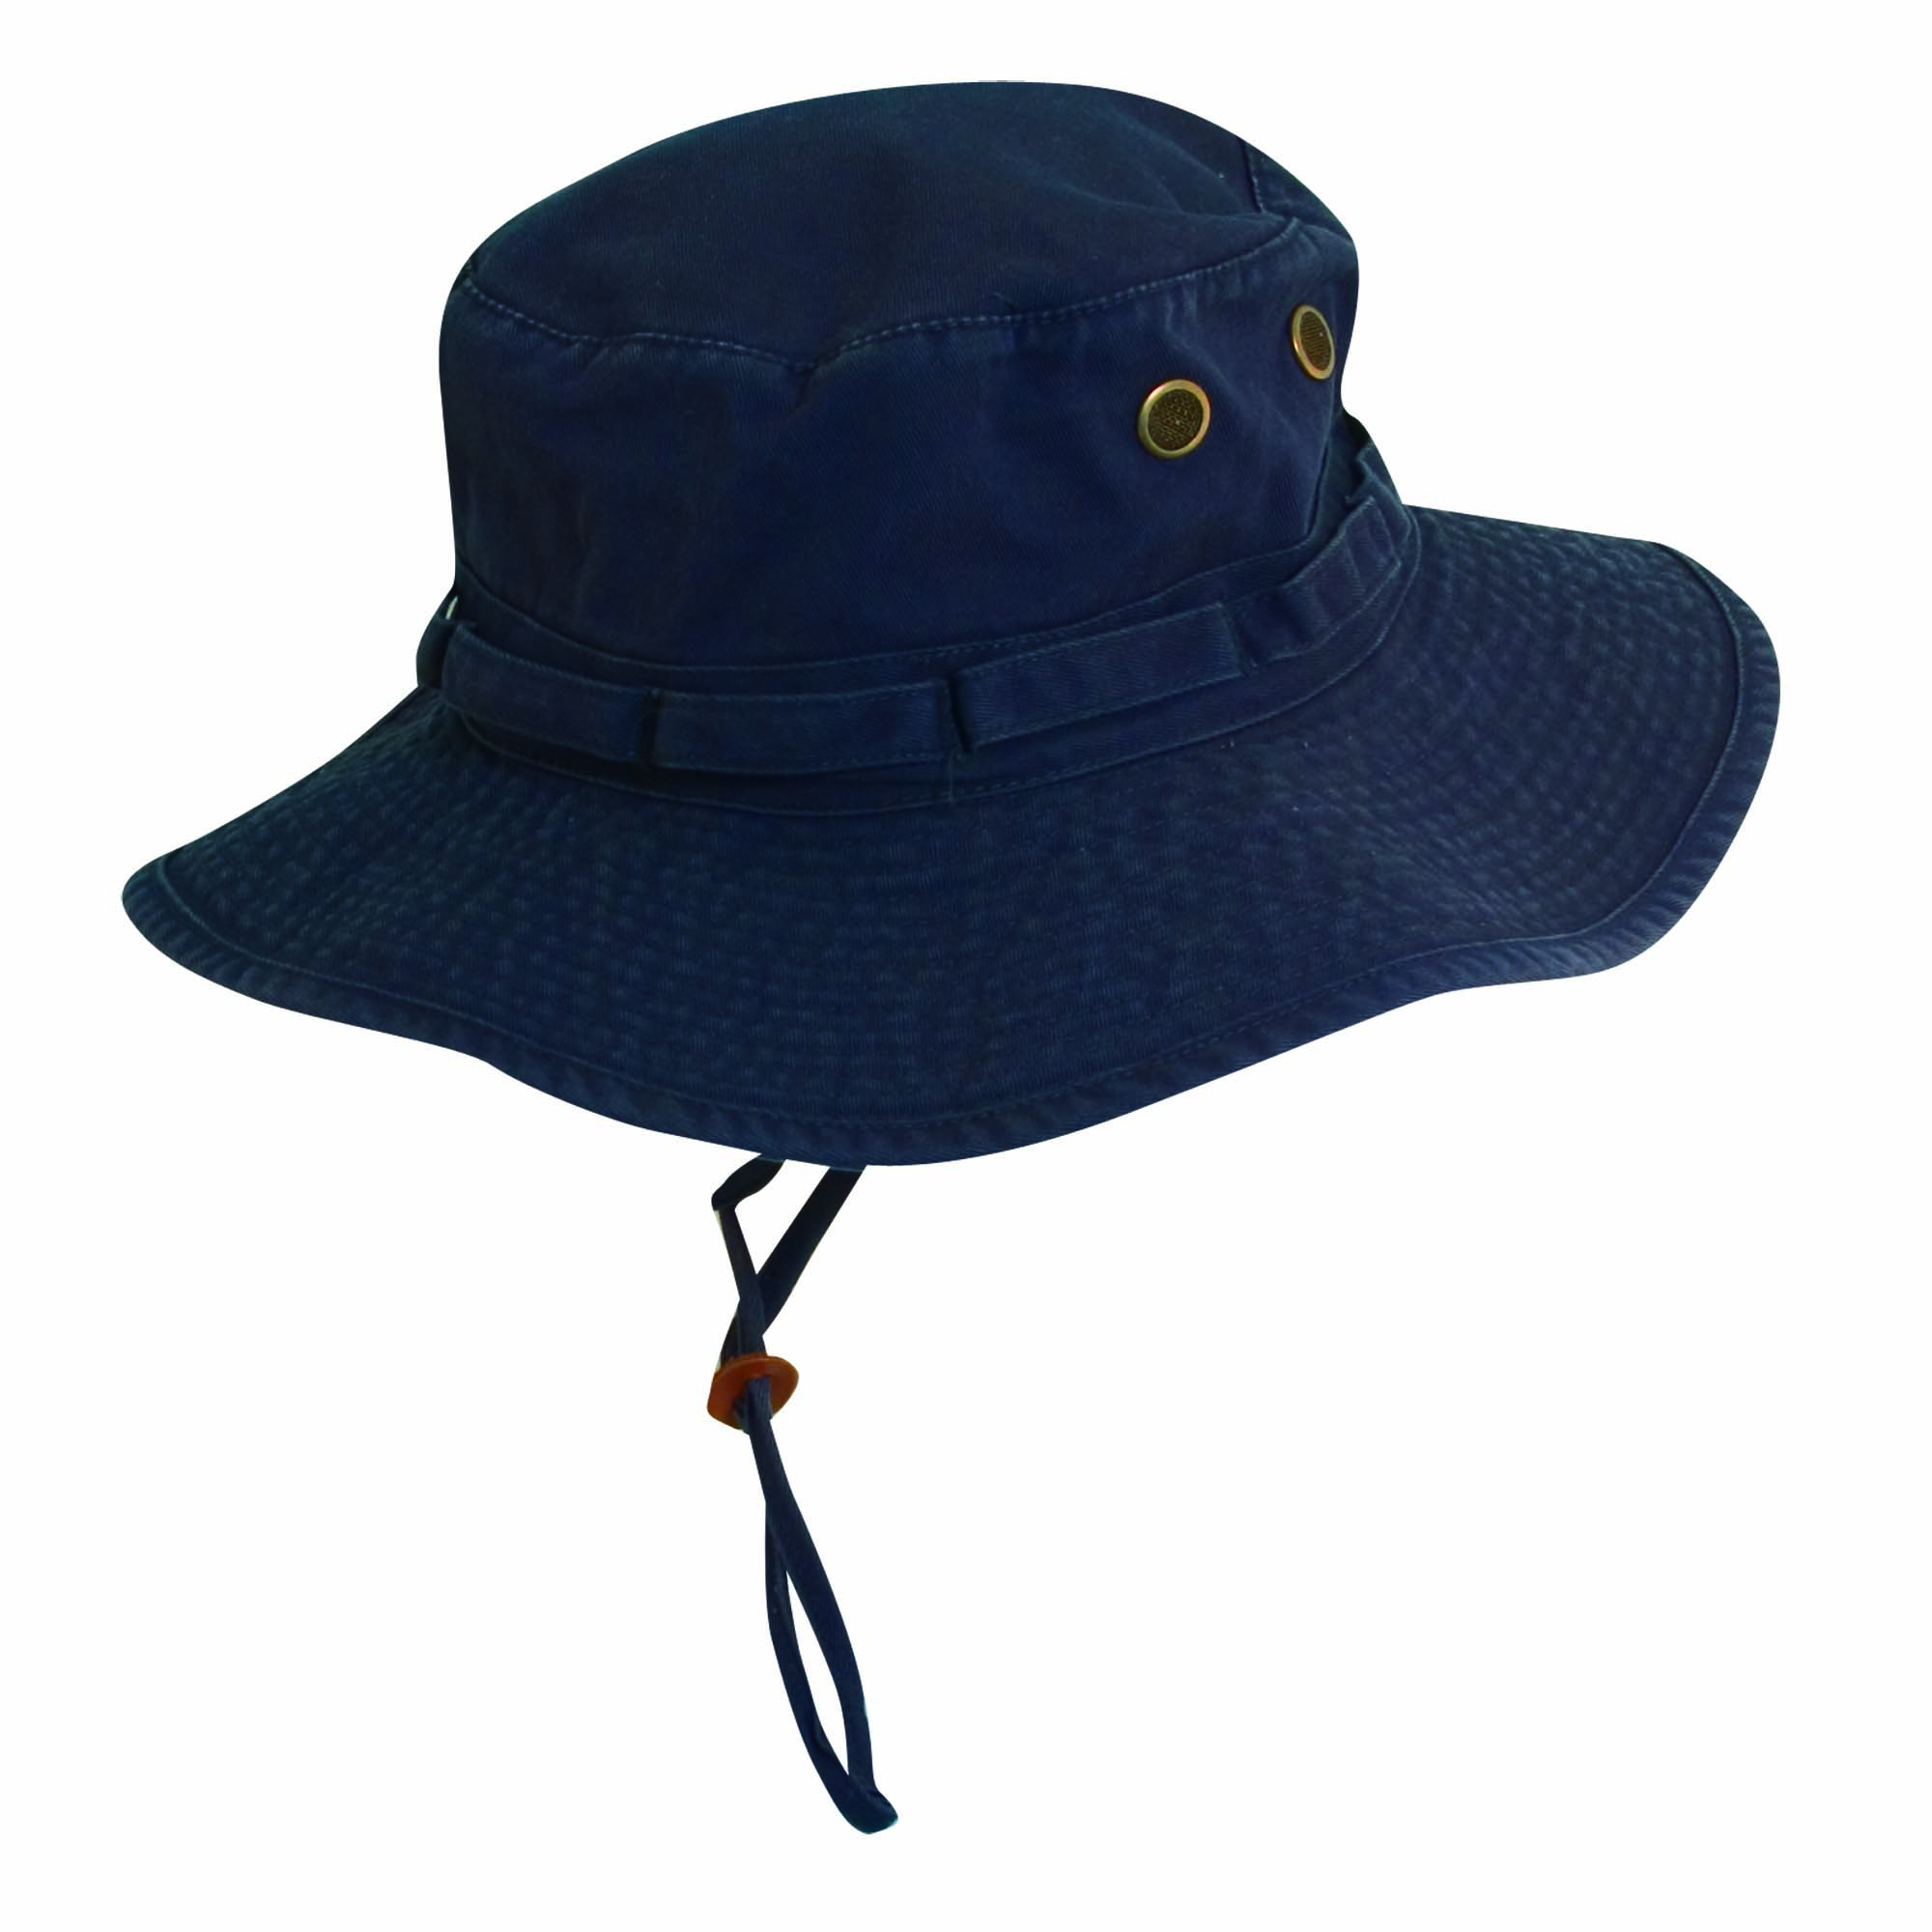 Buy GARMENT WASHED TWILL BOONIE w CONTRAST UNDERBRIM - Avenel Hats ...